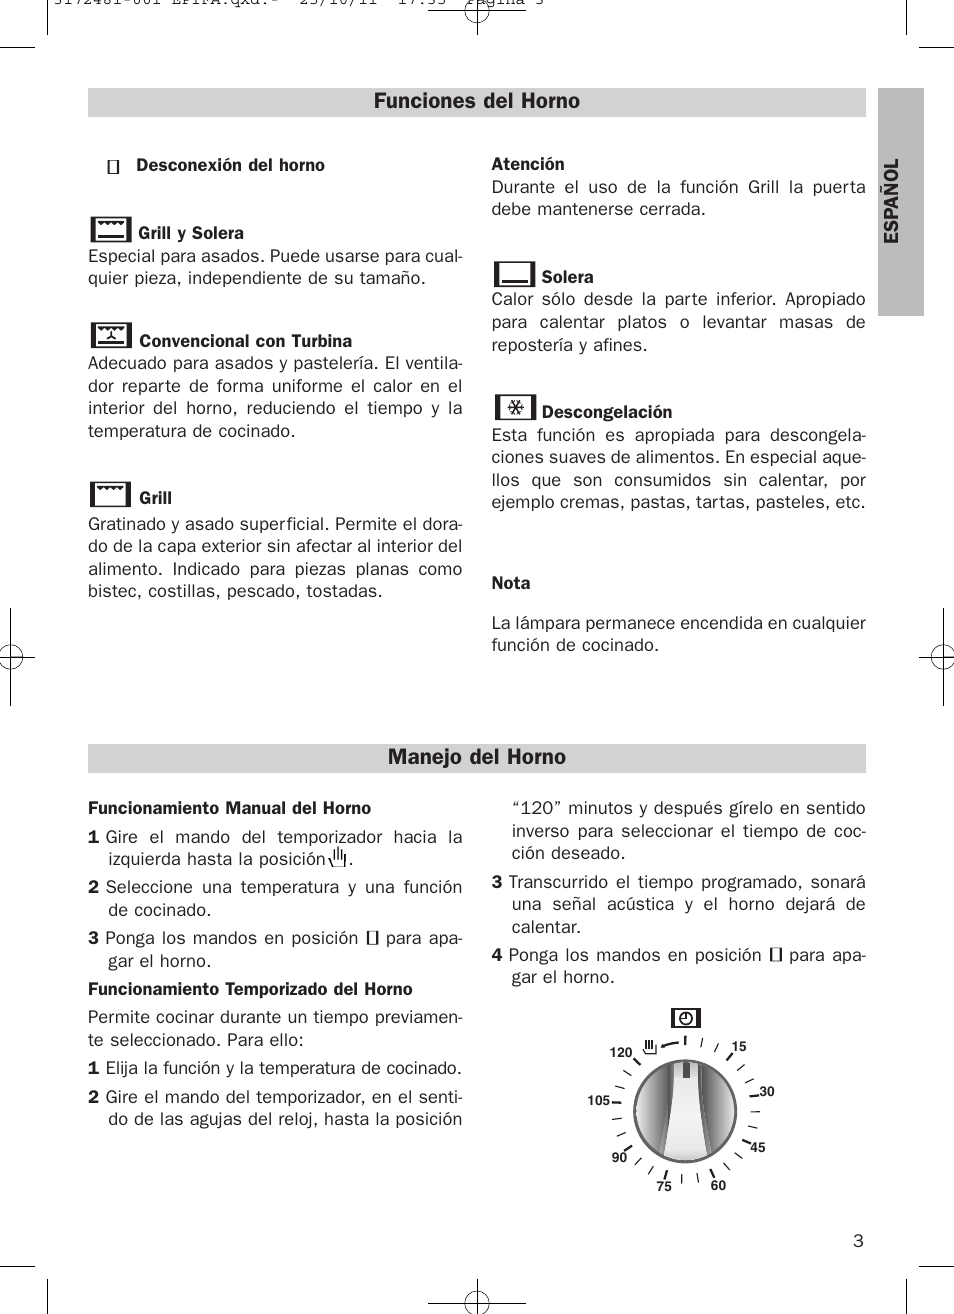 Funciones del horno, Manejo del horno | Teka HE 615 ME User Manual | Page 3  / 12